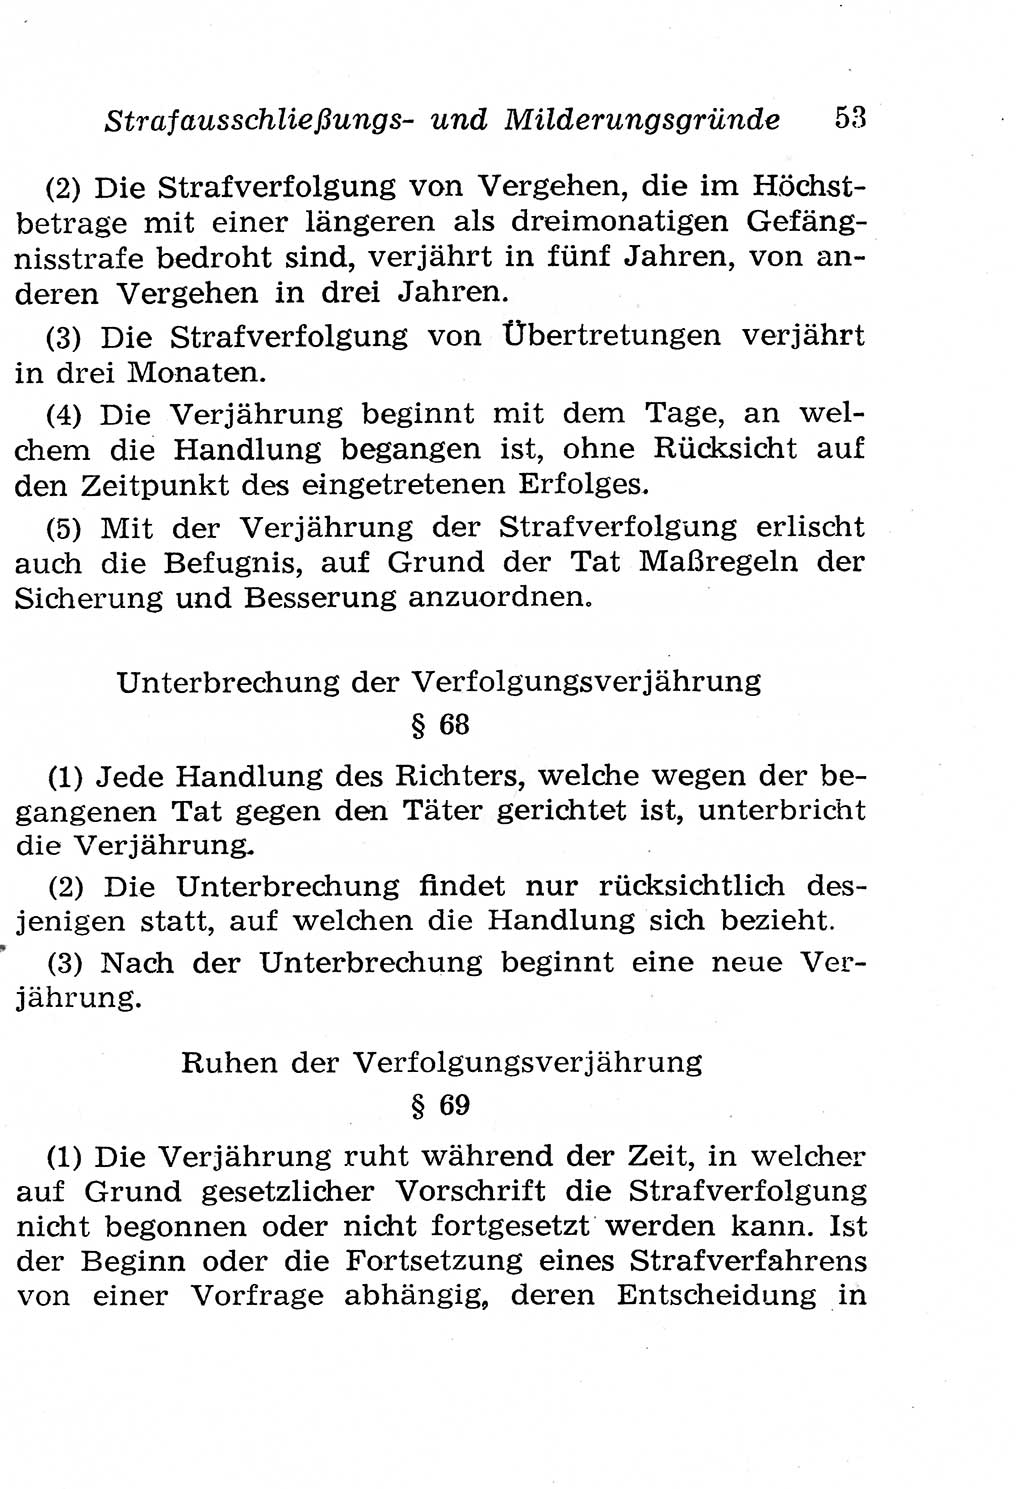 Strafgesetzbuch (StGB) und andere Strafgesetze [Deutsche Demokratische Republik (DDR)] 1958, Seite 53 (StGB Strafges. DDR 1958, S. 53)